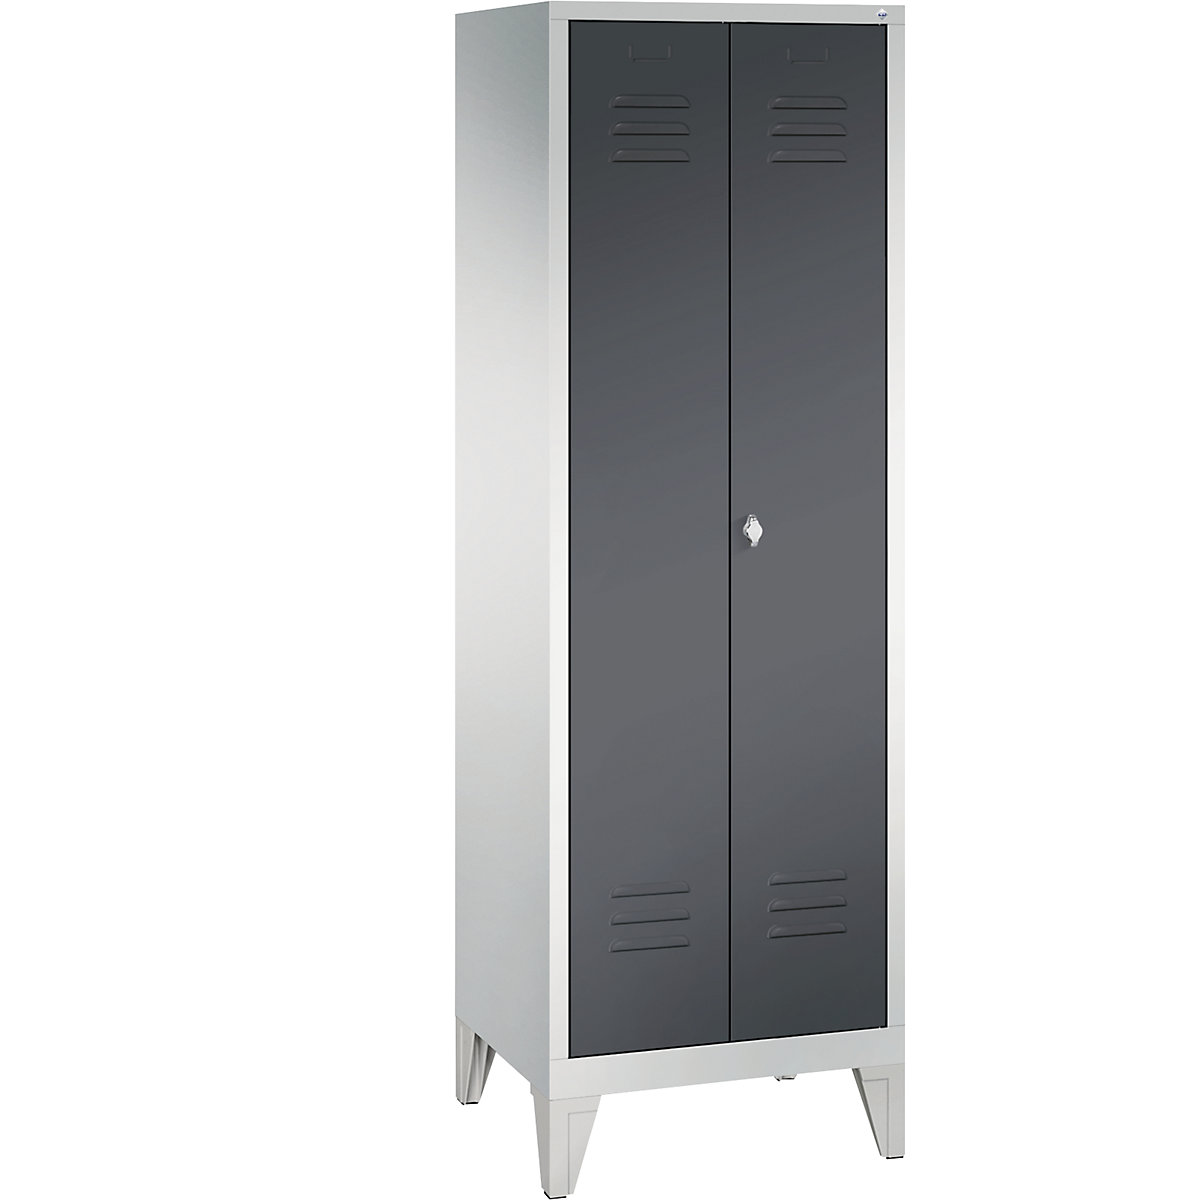 Garderobna omara CLASSIC z nogami in dvokrilnimi vrati na stik – C+P, 2 predelka, širina 300 mm/predelek, svetlo sive / črno sive barve-6